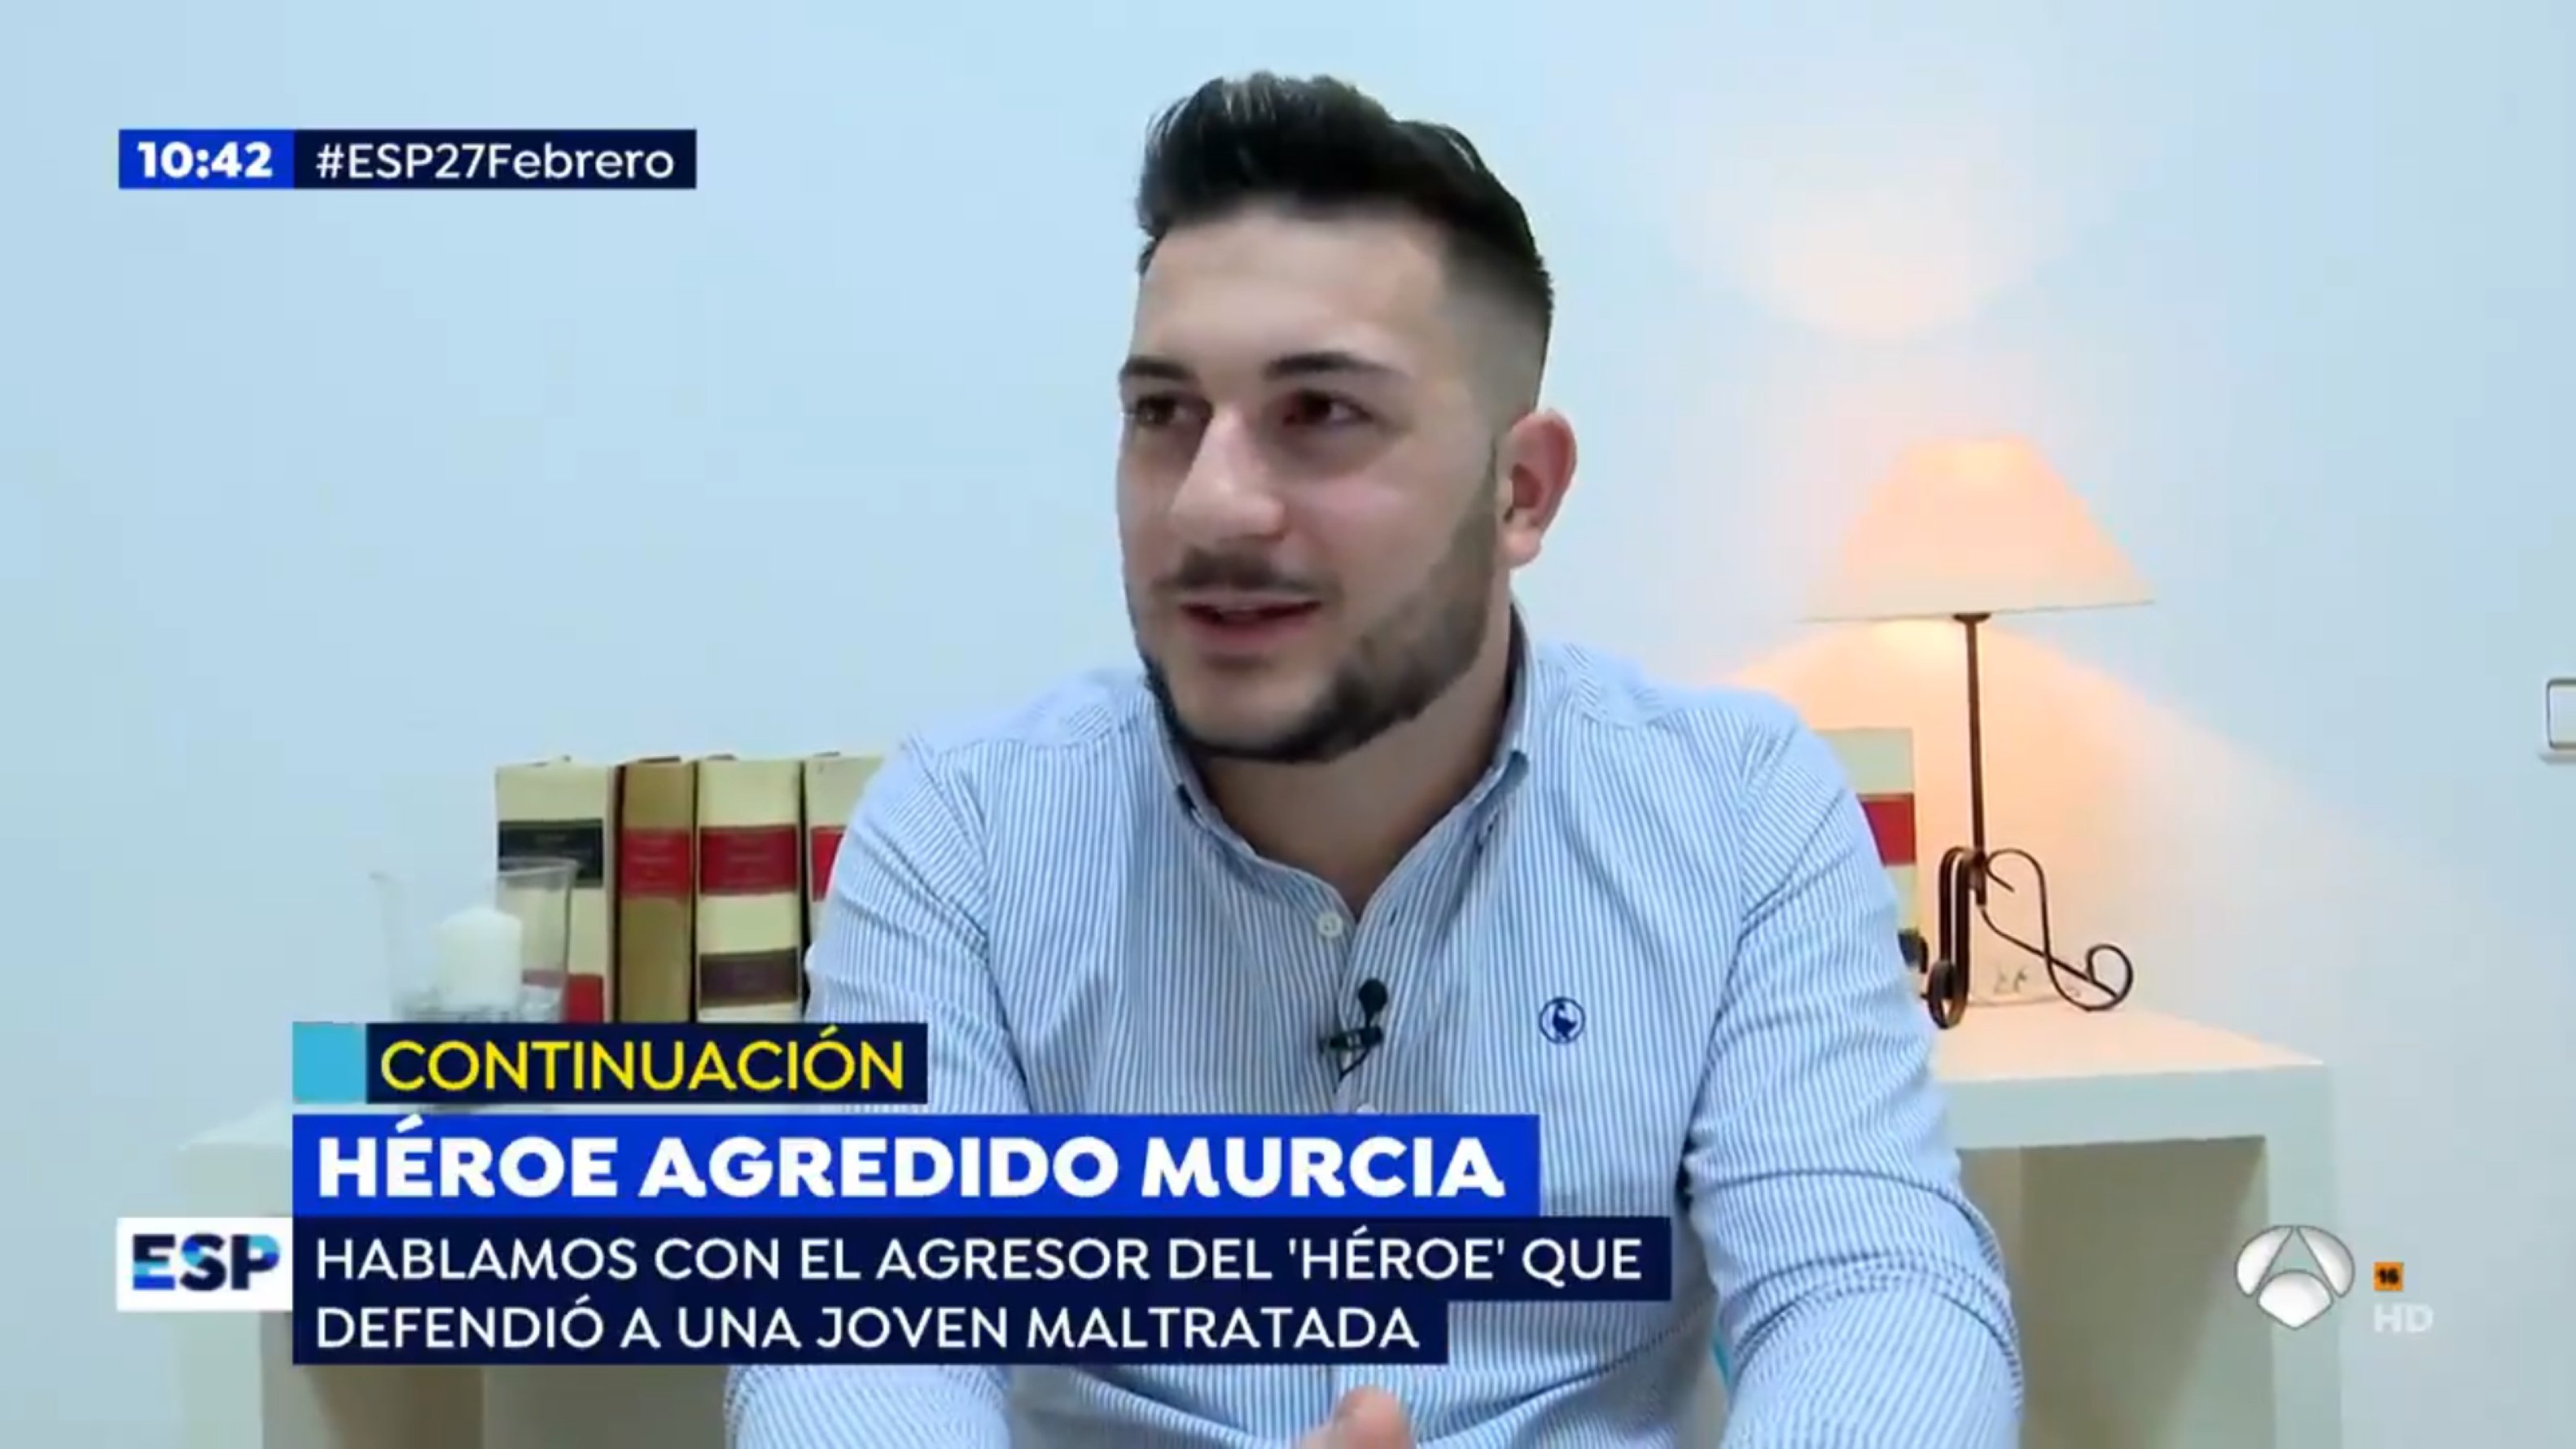 Indigna Antena 3 dando voz a un sonriente agresor machista: "basura"